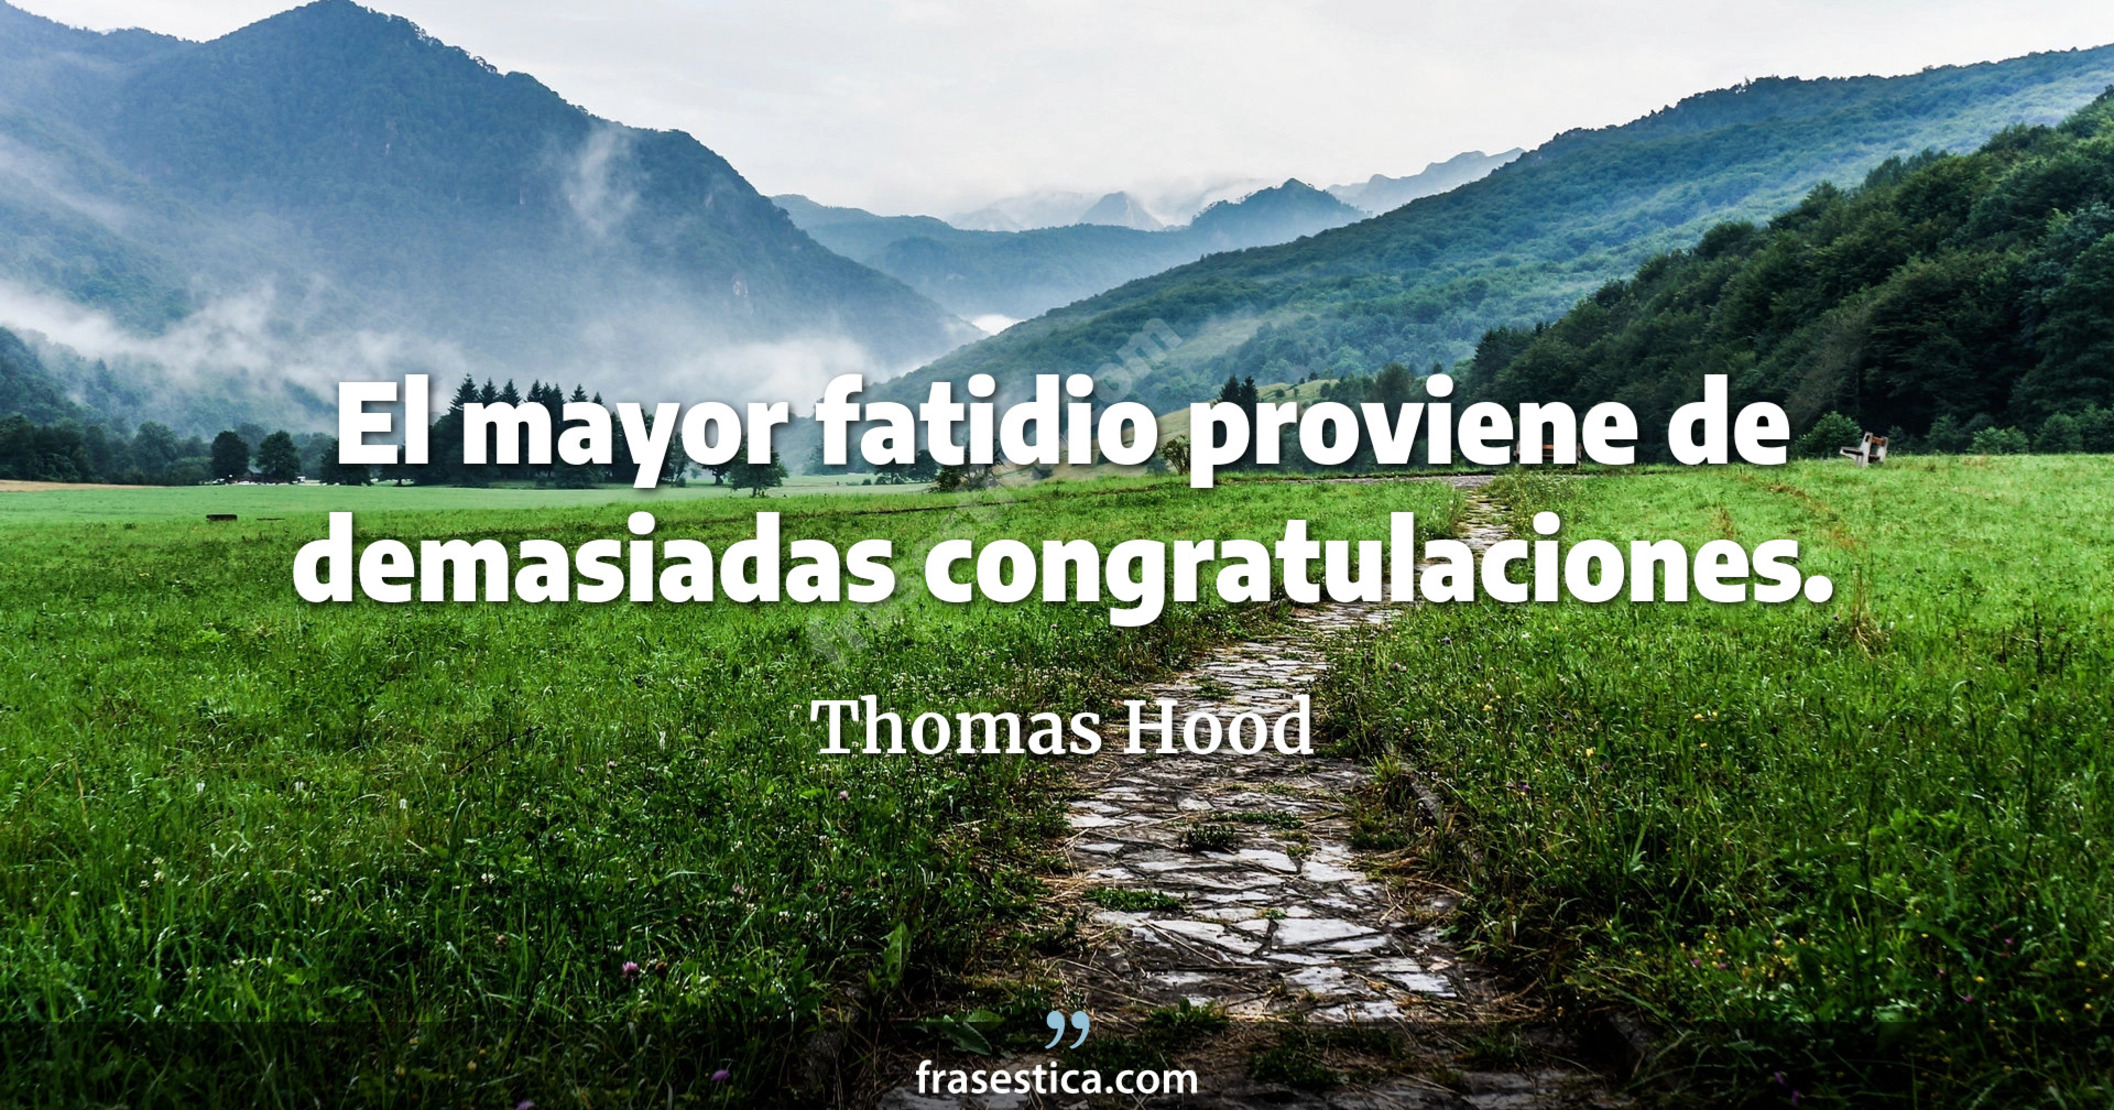 El mayor fatidio proviene de demasiadas congratulaciones. - Thomas Hood